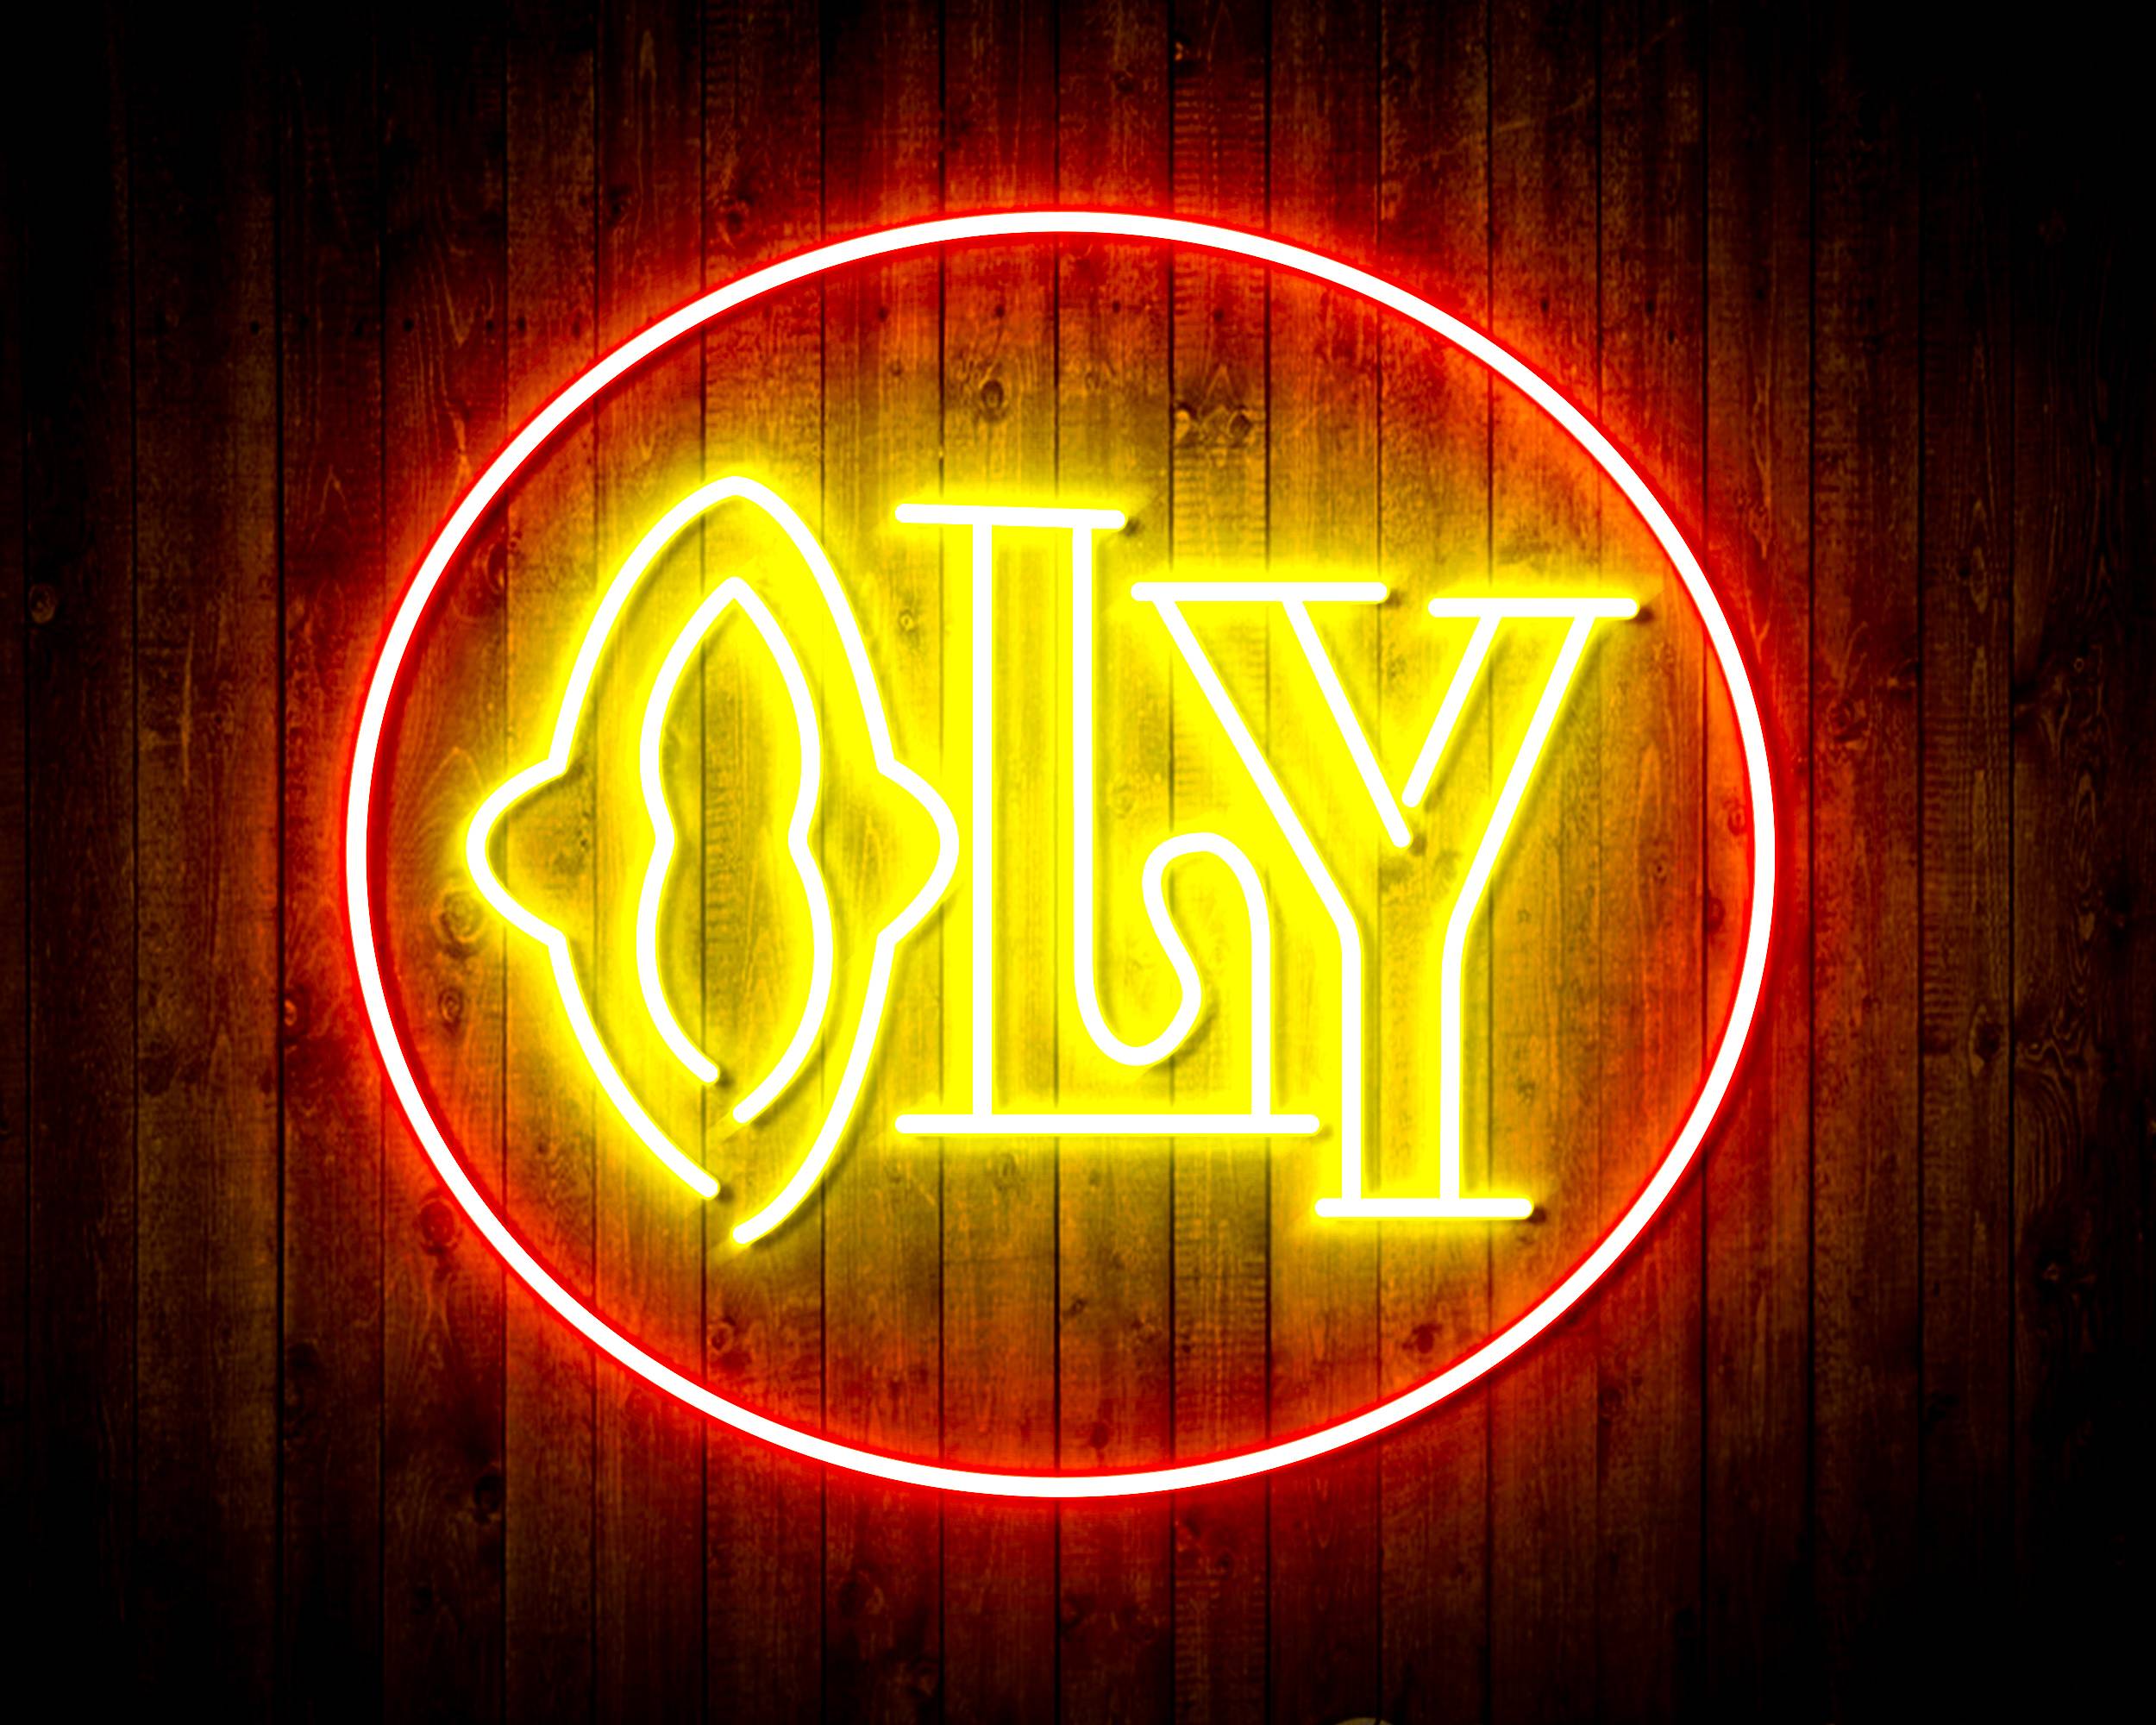 OLY Handmade LED Neon Light Sign